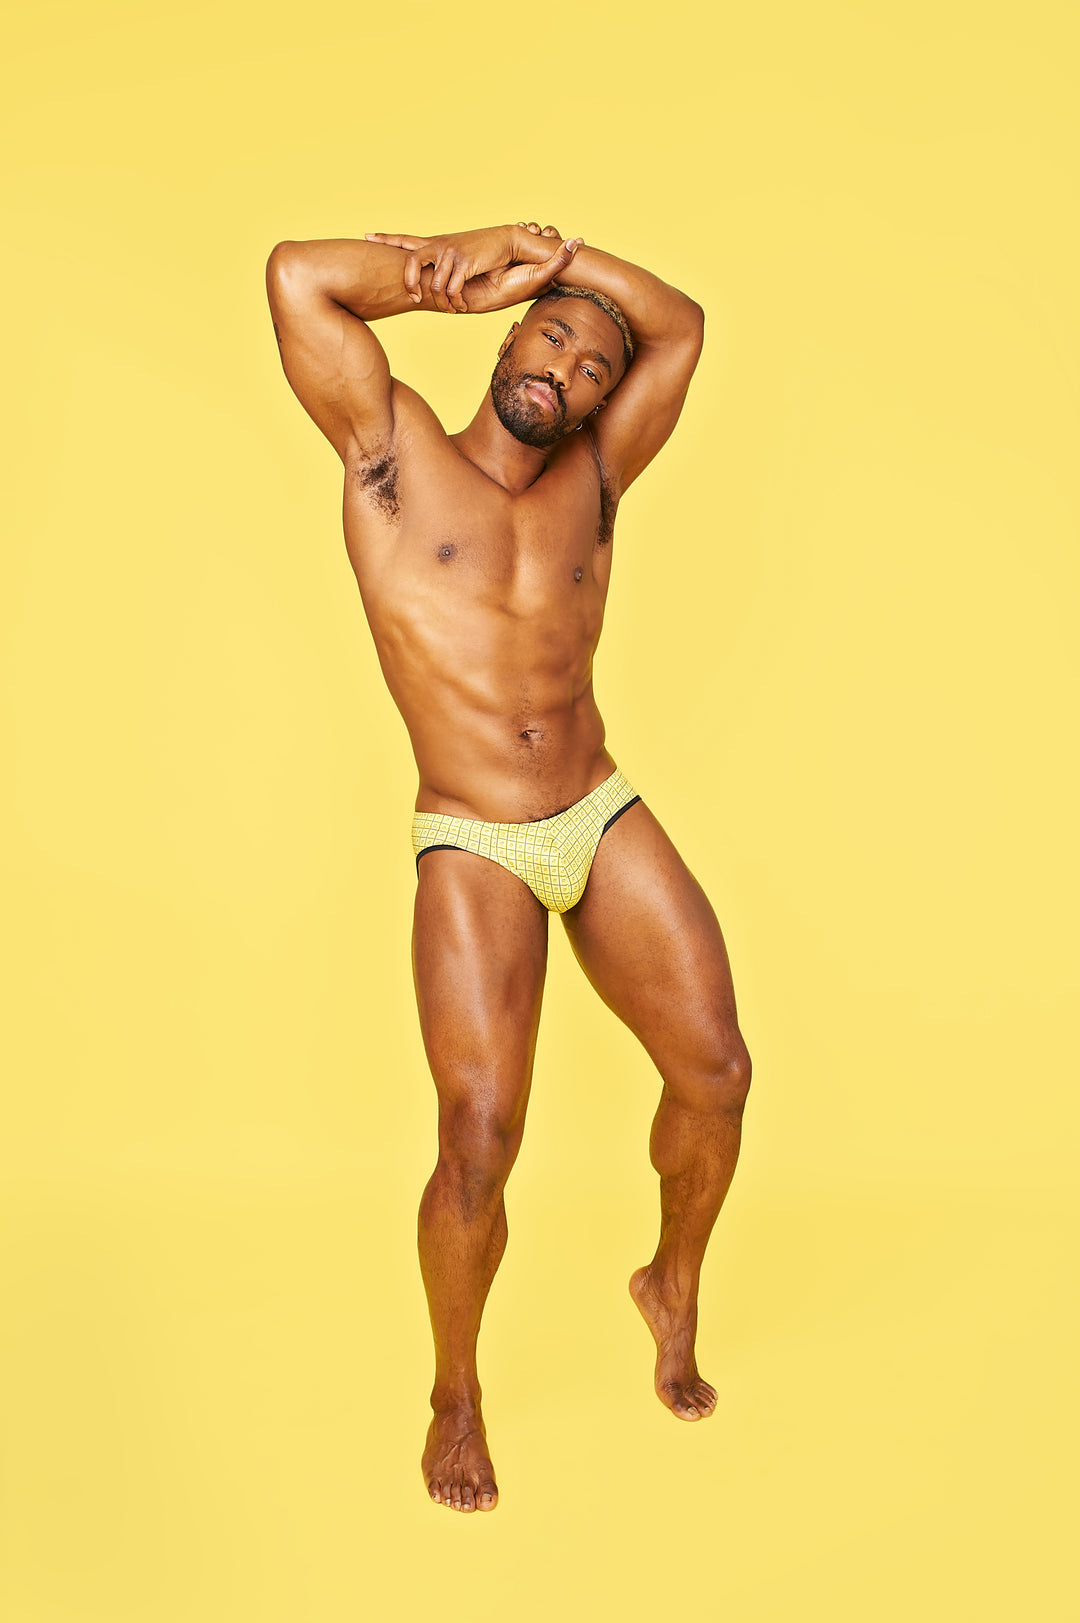 Wayne Underwear, Thirsty Thursdays can only mean one thing… 😈 * * *  #gaybrand #cuteboy #lgbt #thong #cutegay #wayneunderwear #hotgayguy #lgbt  #sexyu